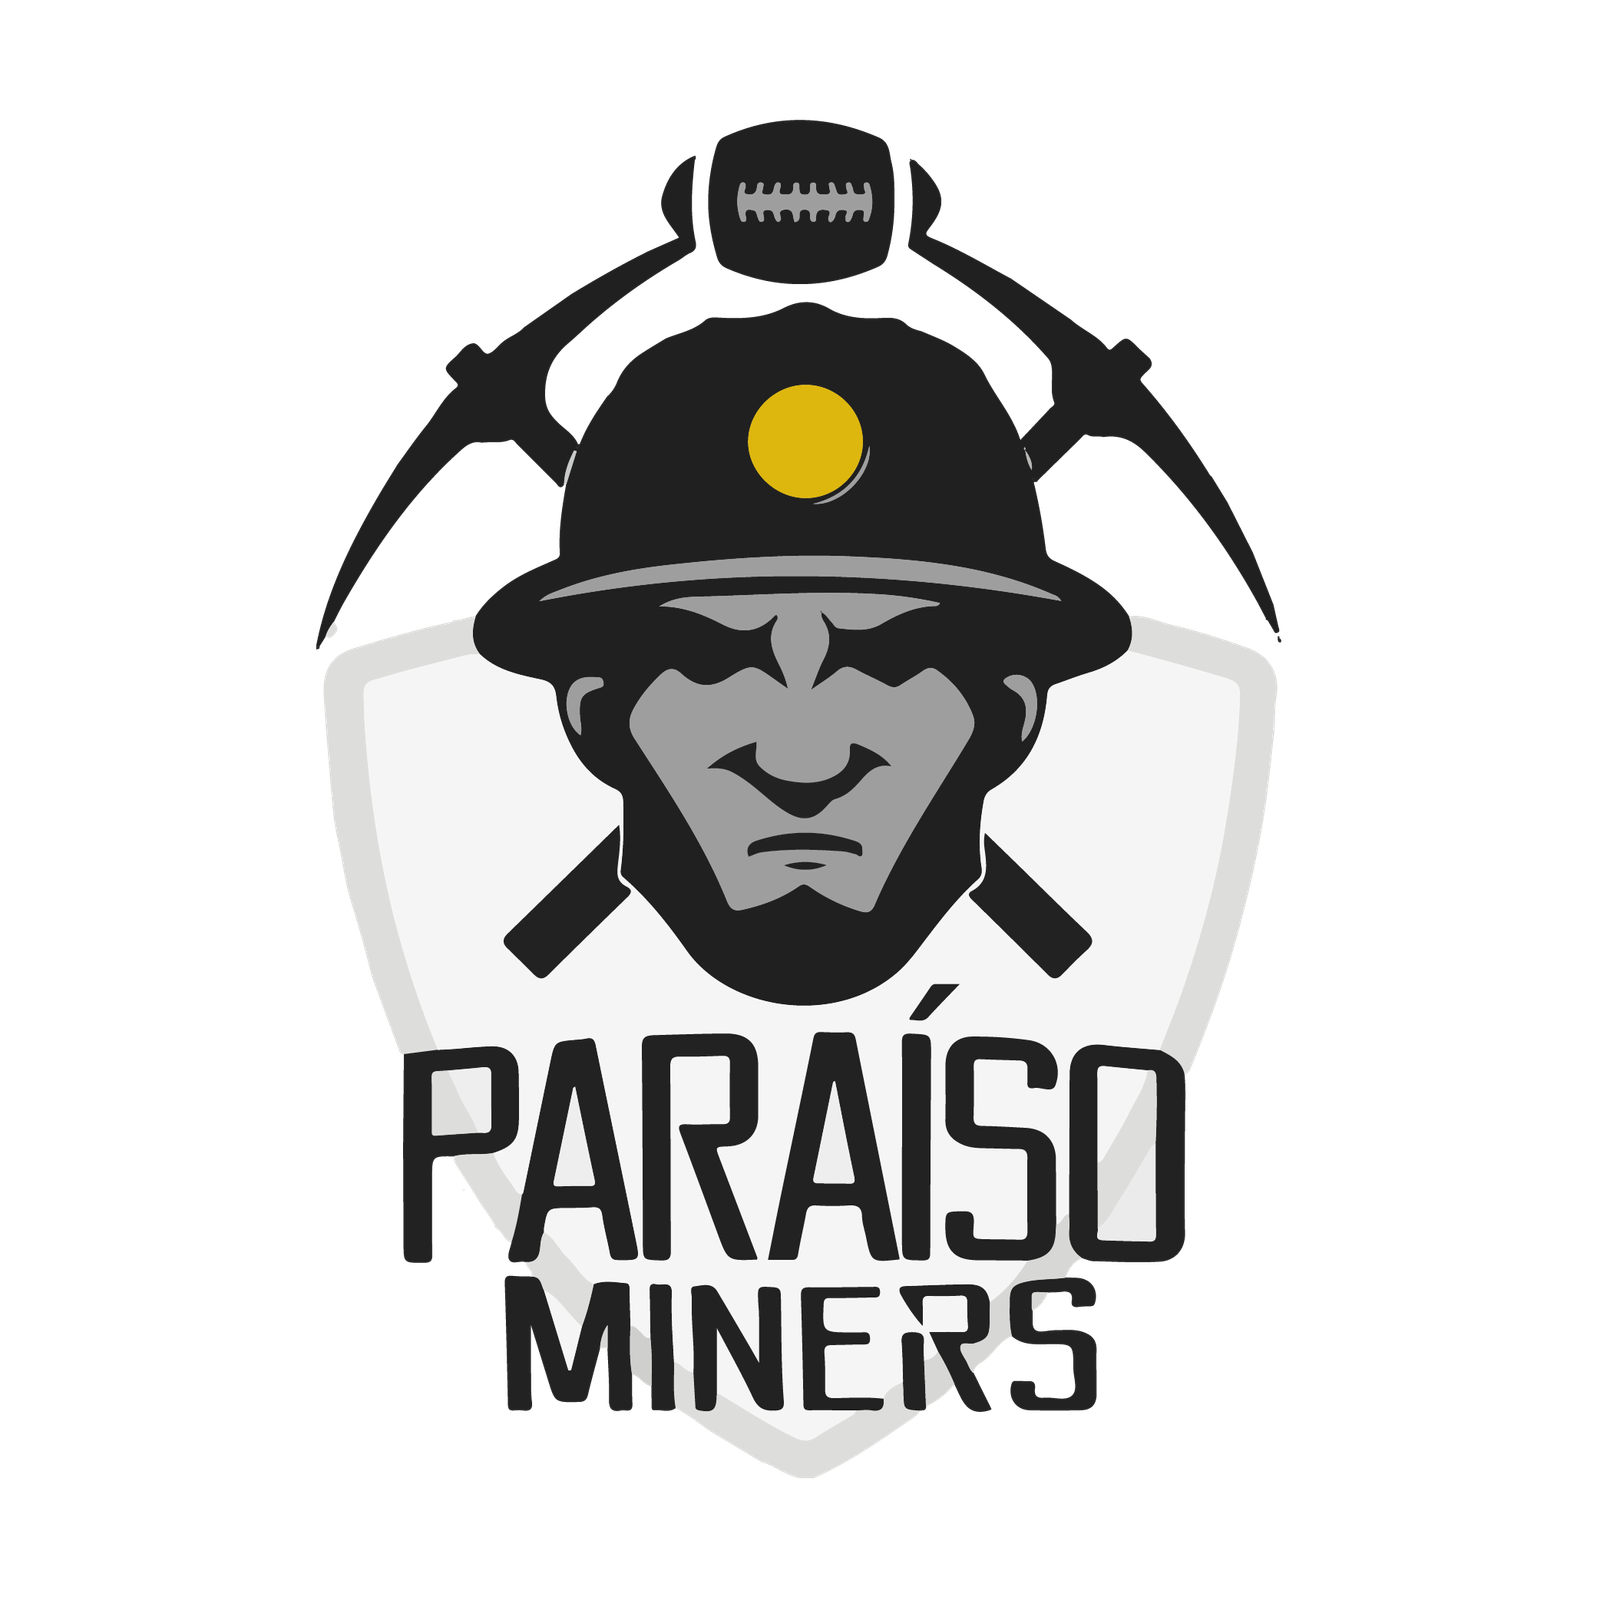 Paraíso Miners